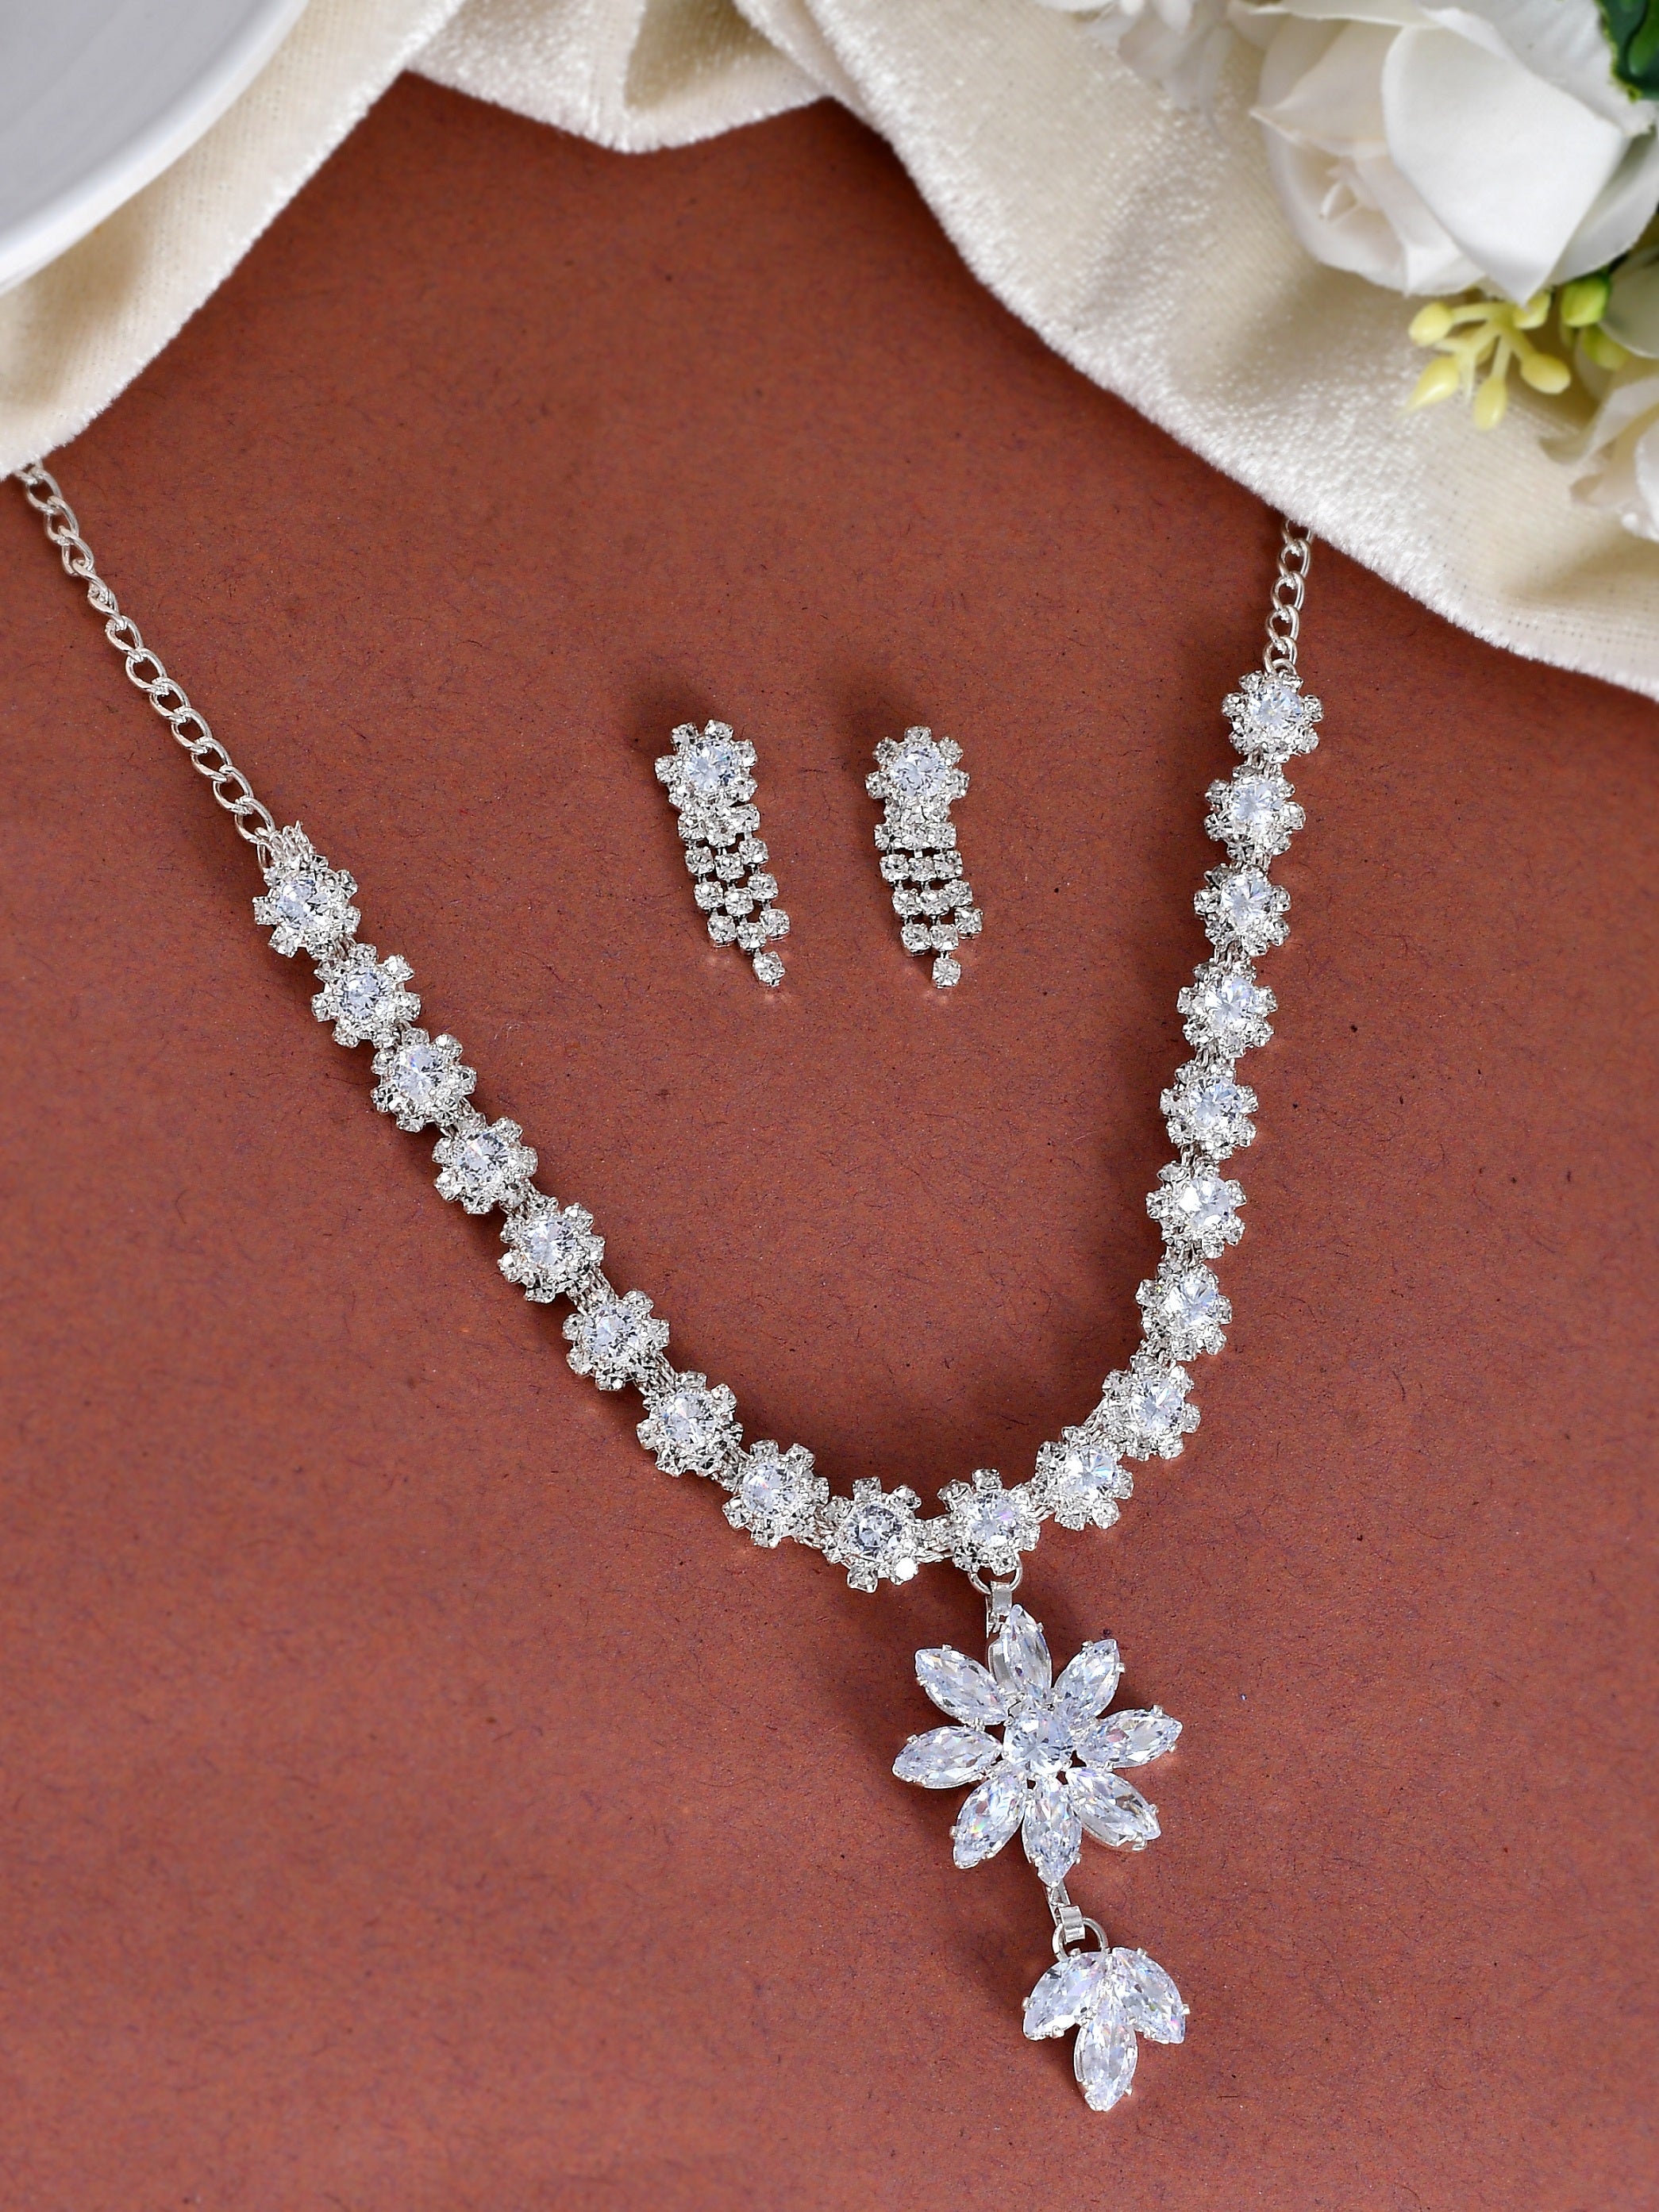 White cubic zirconia necklace-sets - Sanvi Jewels Pvt. Ltd. - 3945054